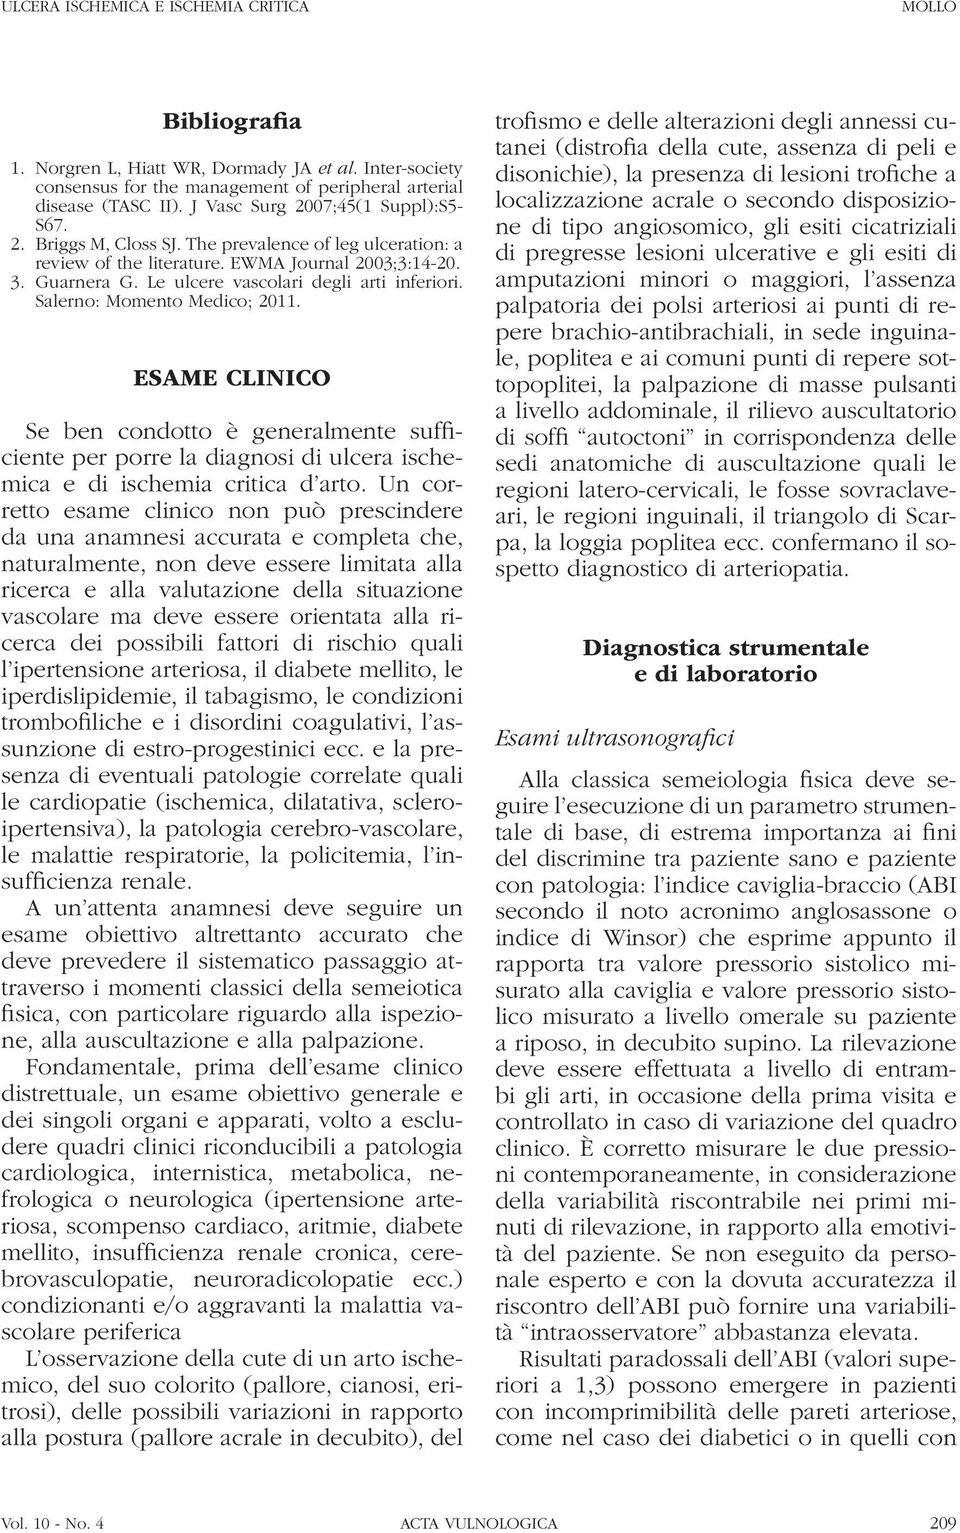 Le ulcere vascolari degli arti inferiori. Salerno: Momento Medico; 2011.